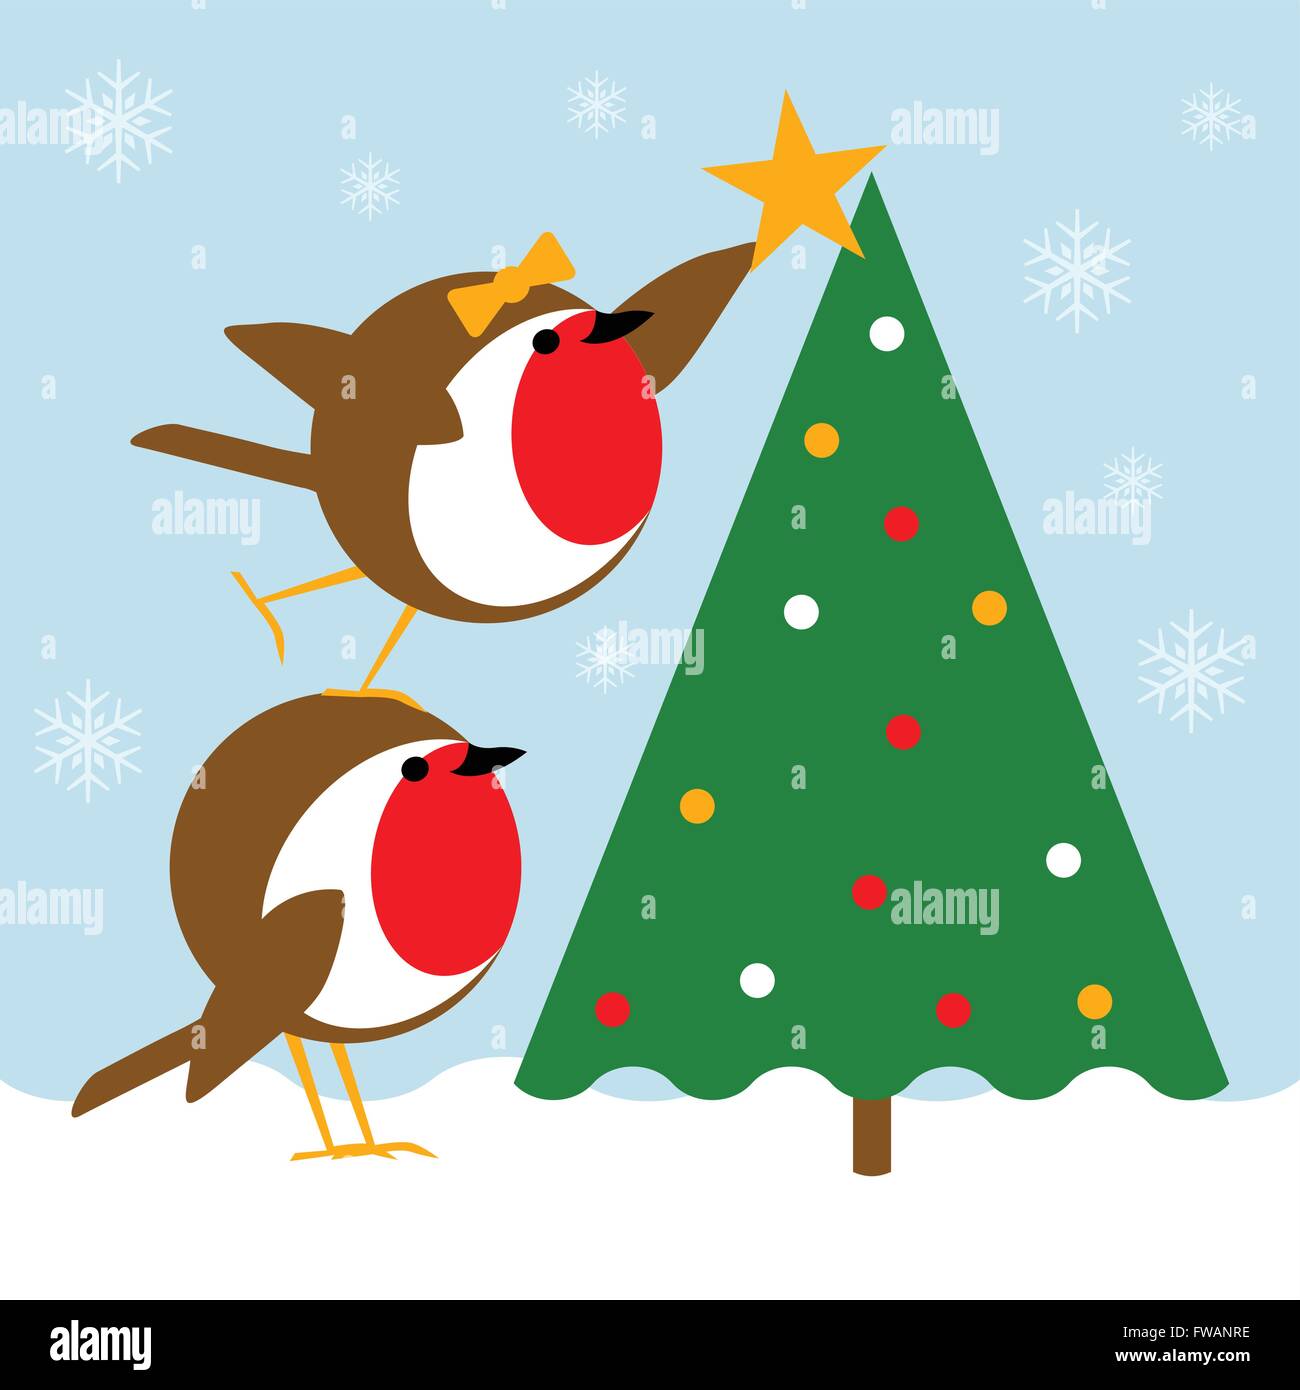 Scena di natale con graziosi robins posizionando una stella sulla cima di un albero di Natale. Scena invernale con neve sul terreno e luci festose nella struttura ad albero. Illustrazione Vettoriale